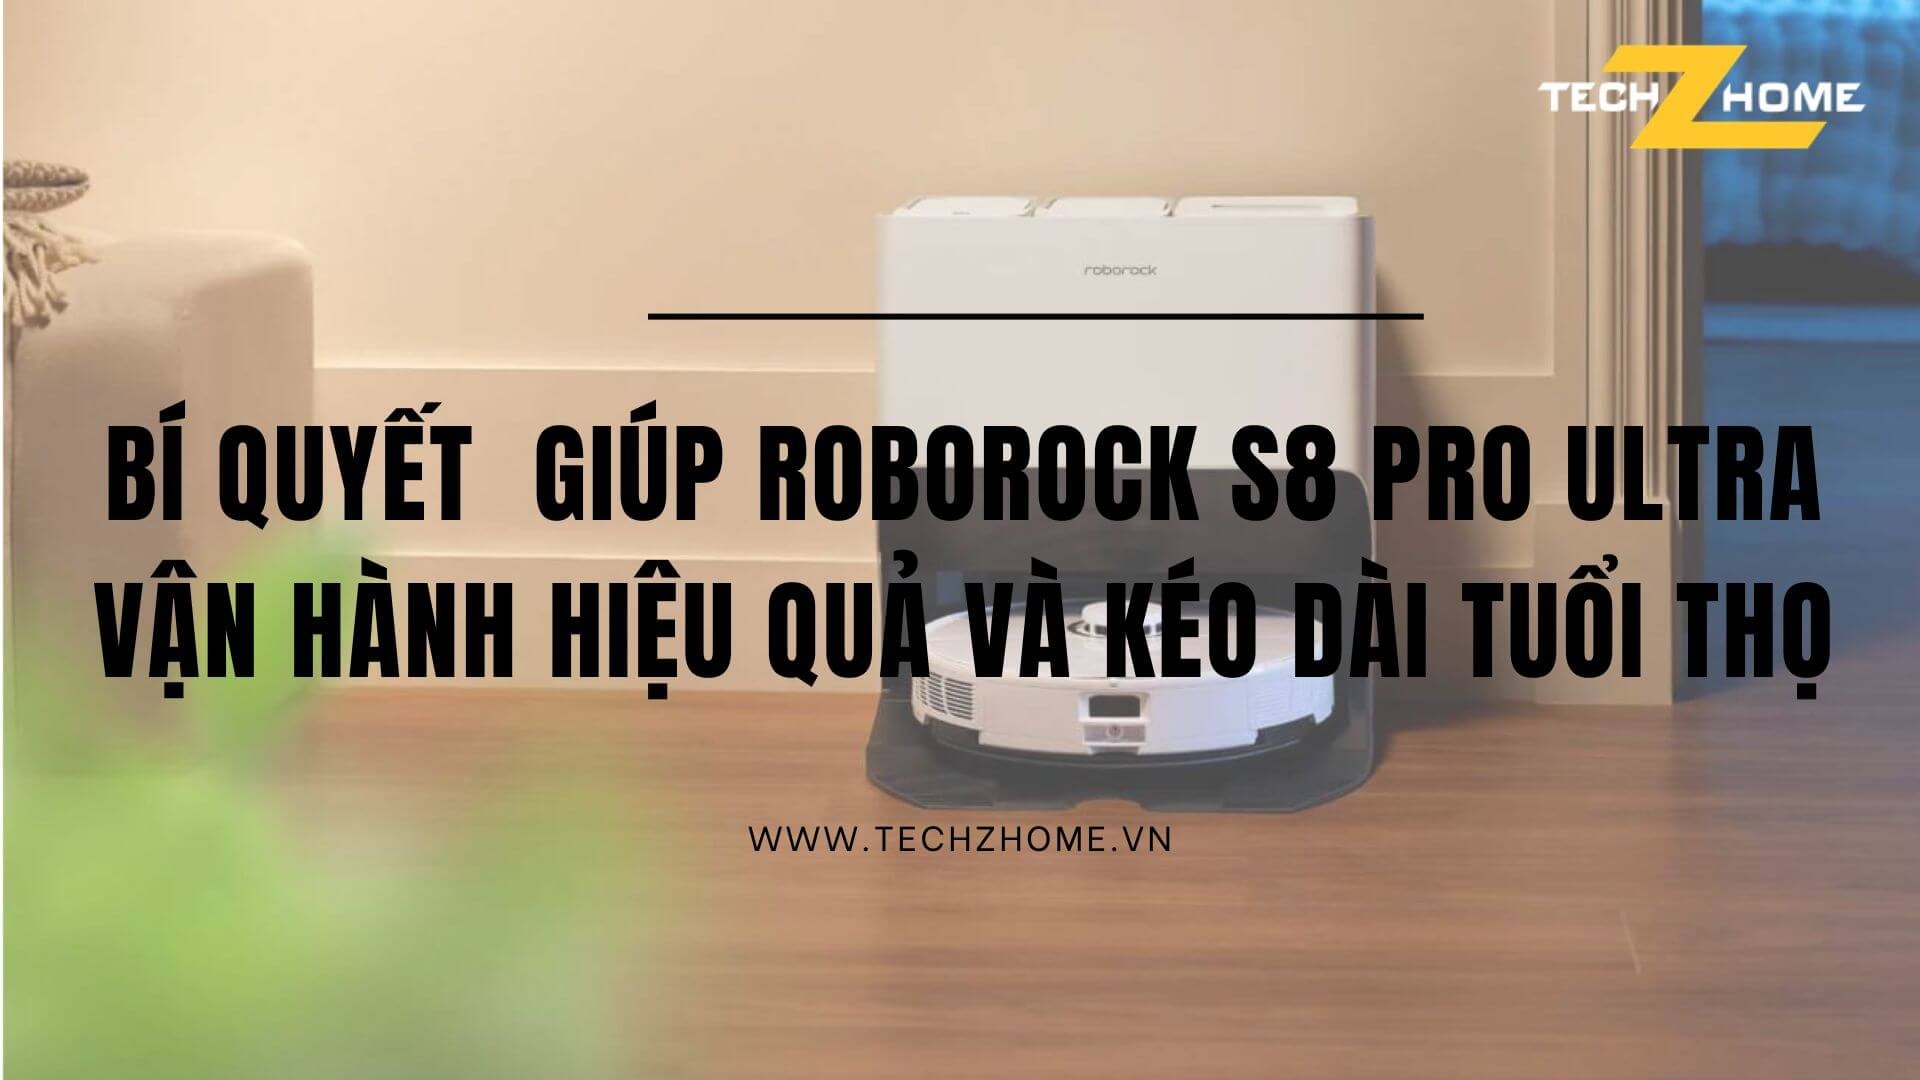 Bí quyết giúp Roborock S8 Pro Ultra vận hành hiệu quả và kéo dài tuổi thọ